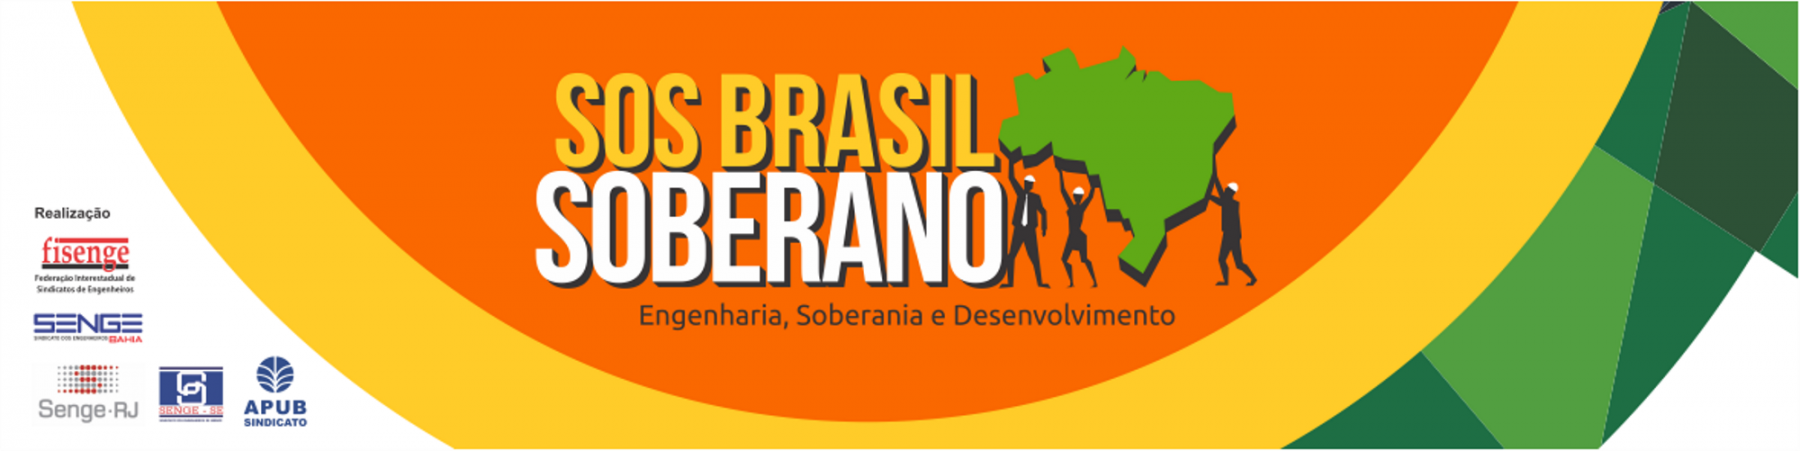 Belo Horizonte sediará 3ª edição do Simpósio SOS Brasil Soberano